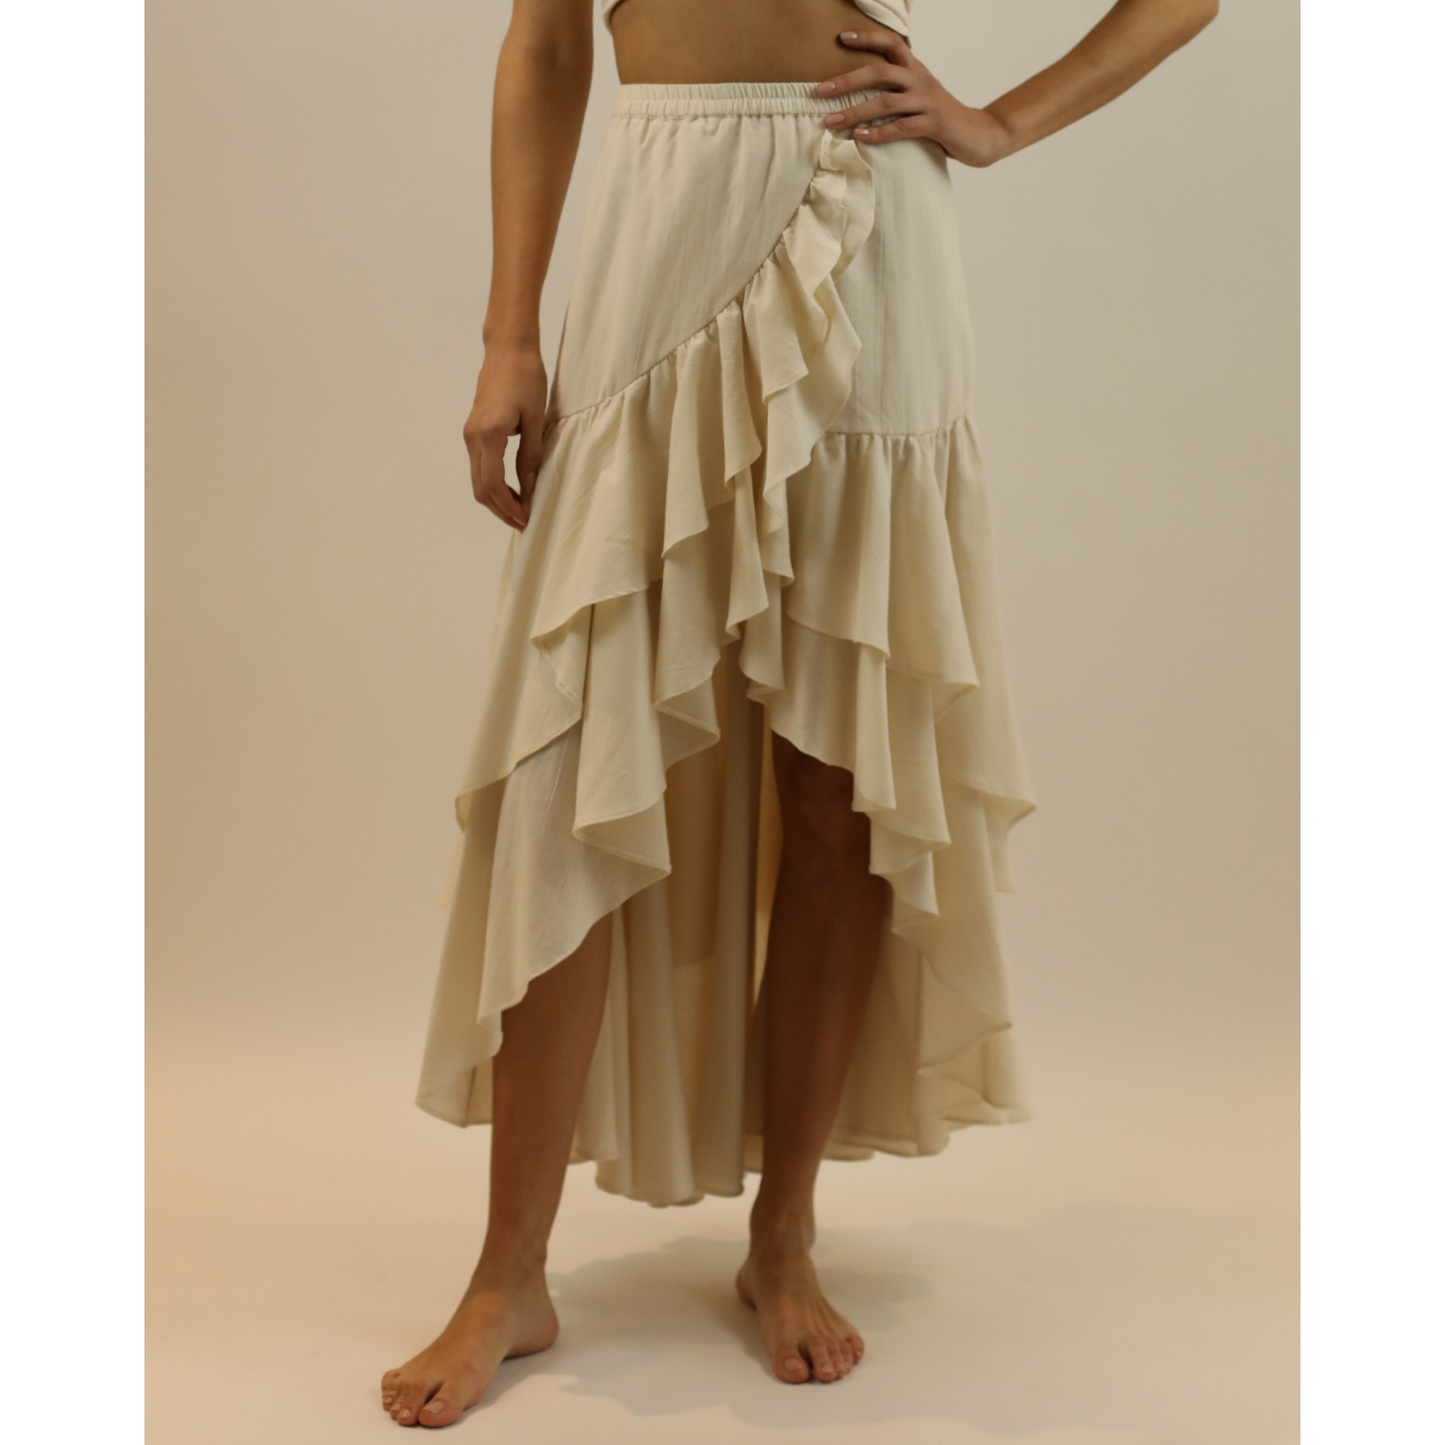 carlotta skirt in off white